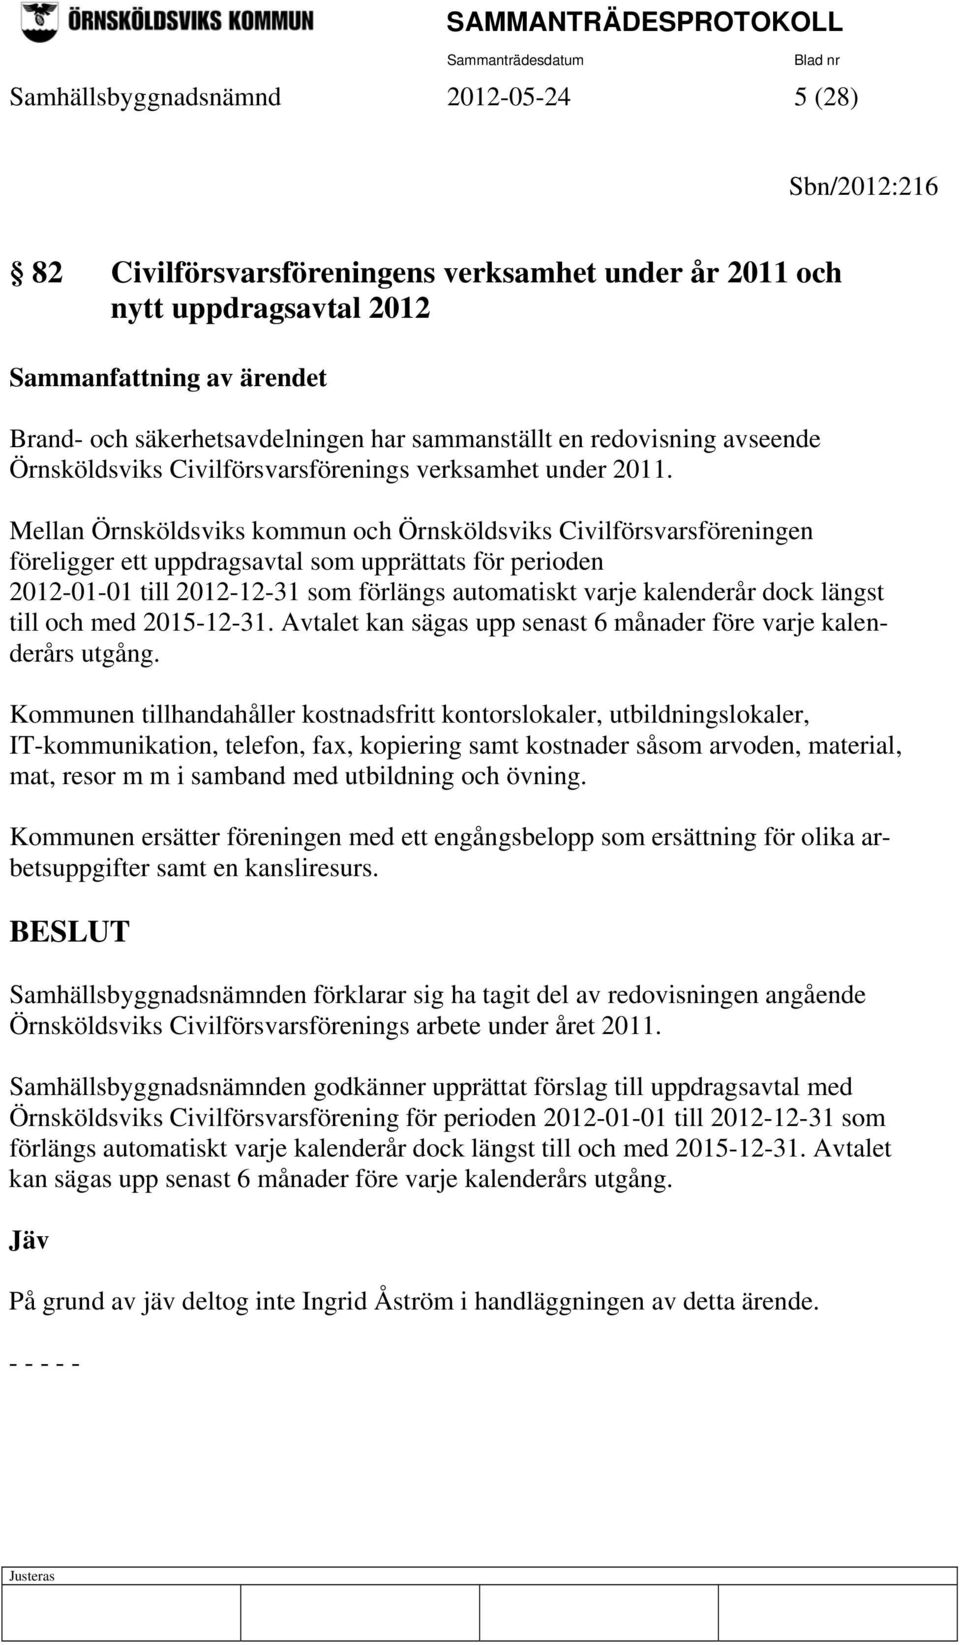 Mellan Örnsköldsviks kommun och Örnsköldsviks Civilförsvarsföreningen föreligger ett uppdragsavtal som upprättats för perioden 2012-01-01 till 2012-12-31 som förlängs automatiskt varje kalenderår